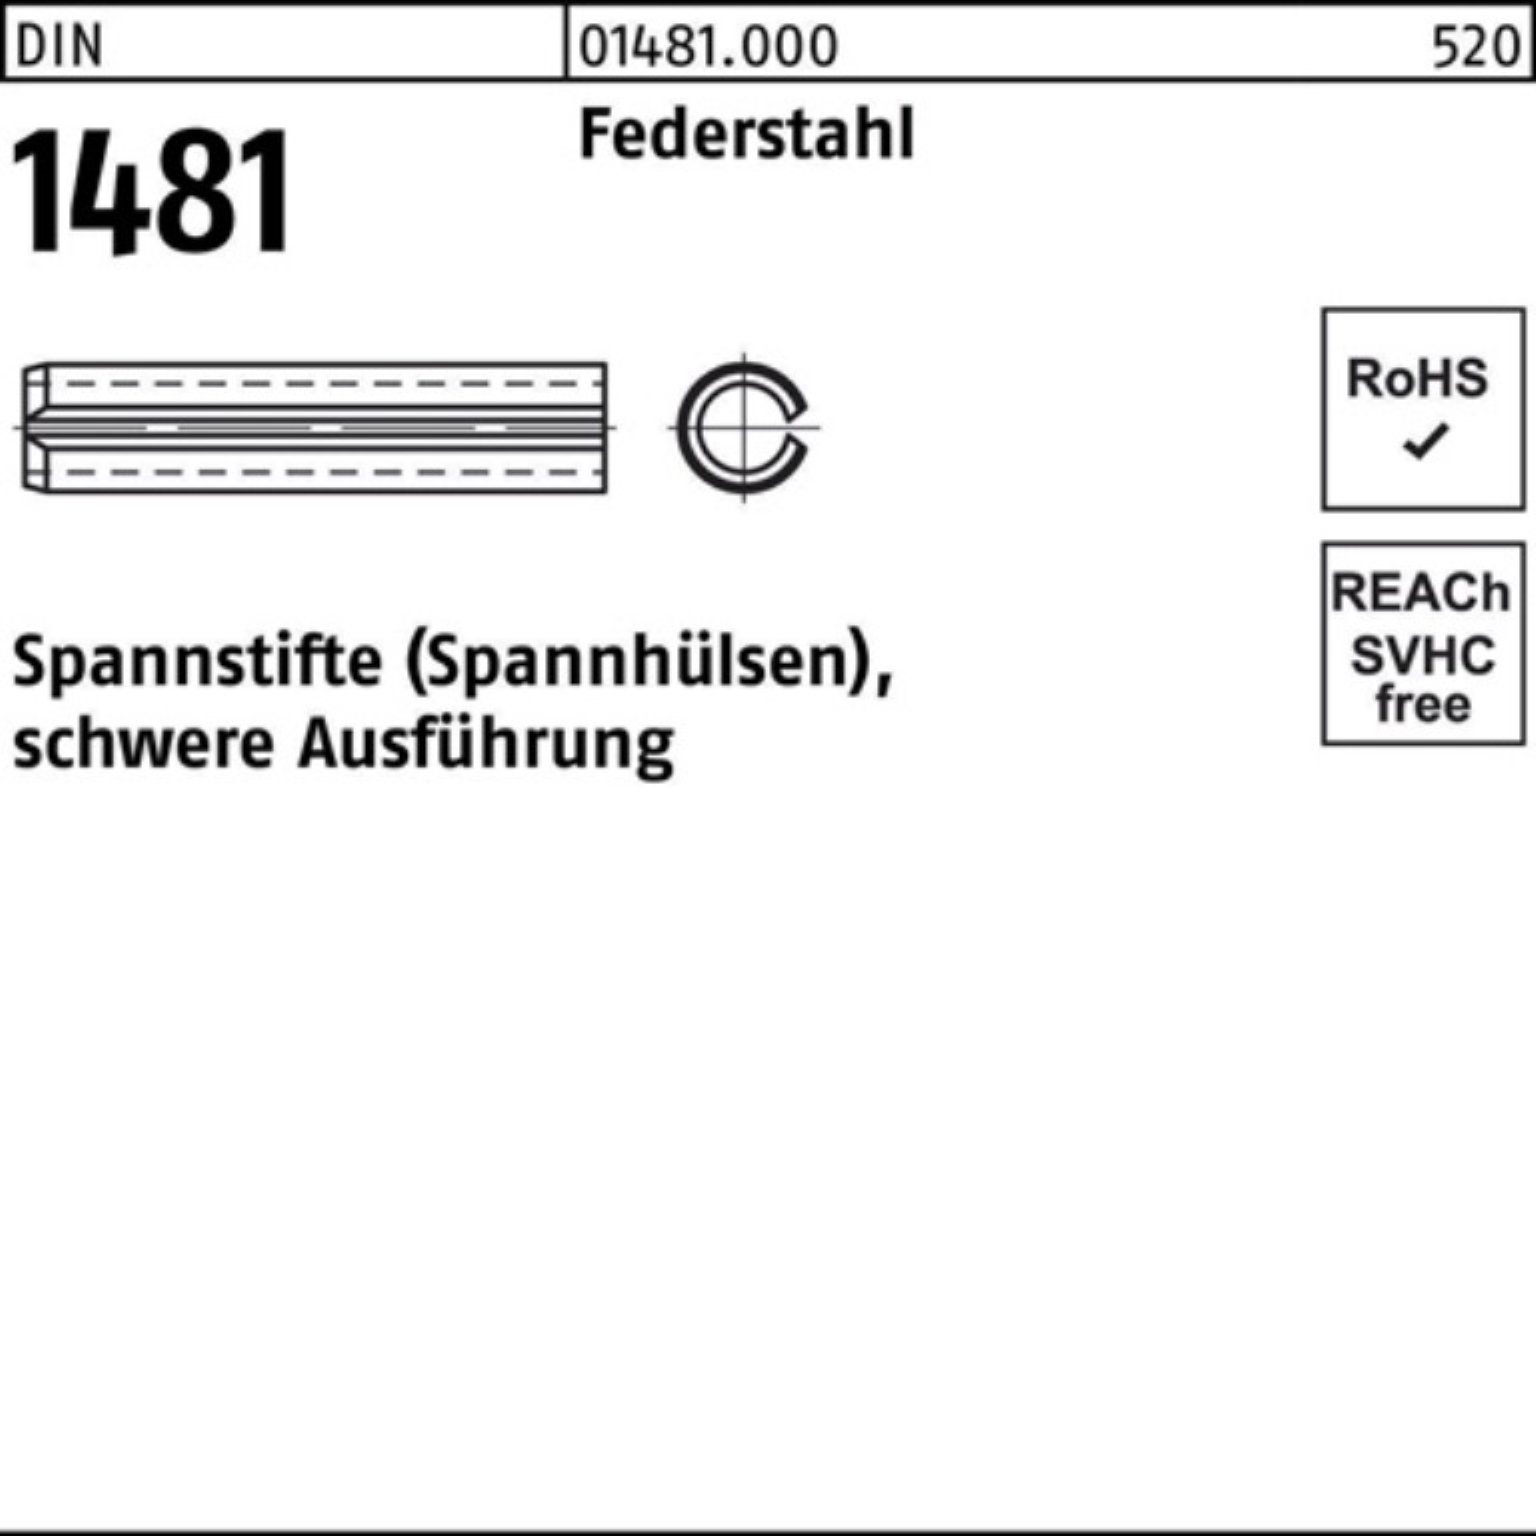 Spannstift Reyher DIN 21x 95 Spannstift Pack 100er Ausführung Federstahl 1481 schwere 1